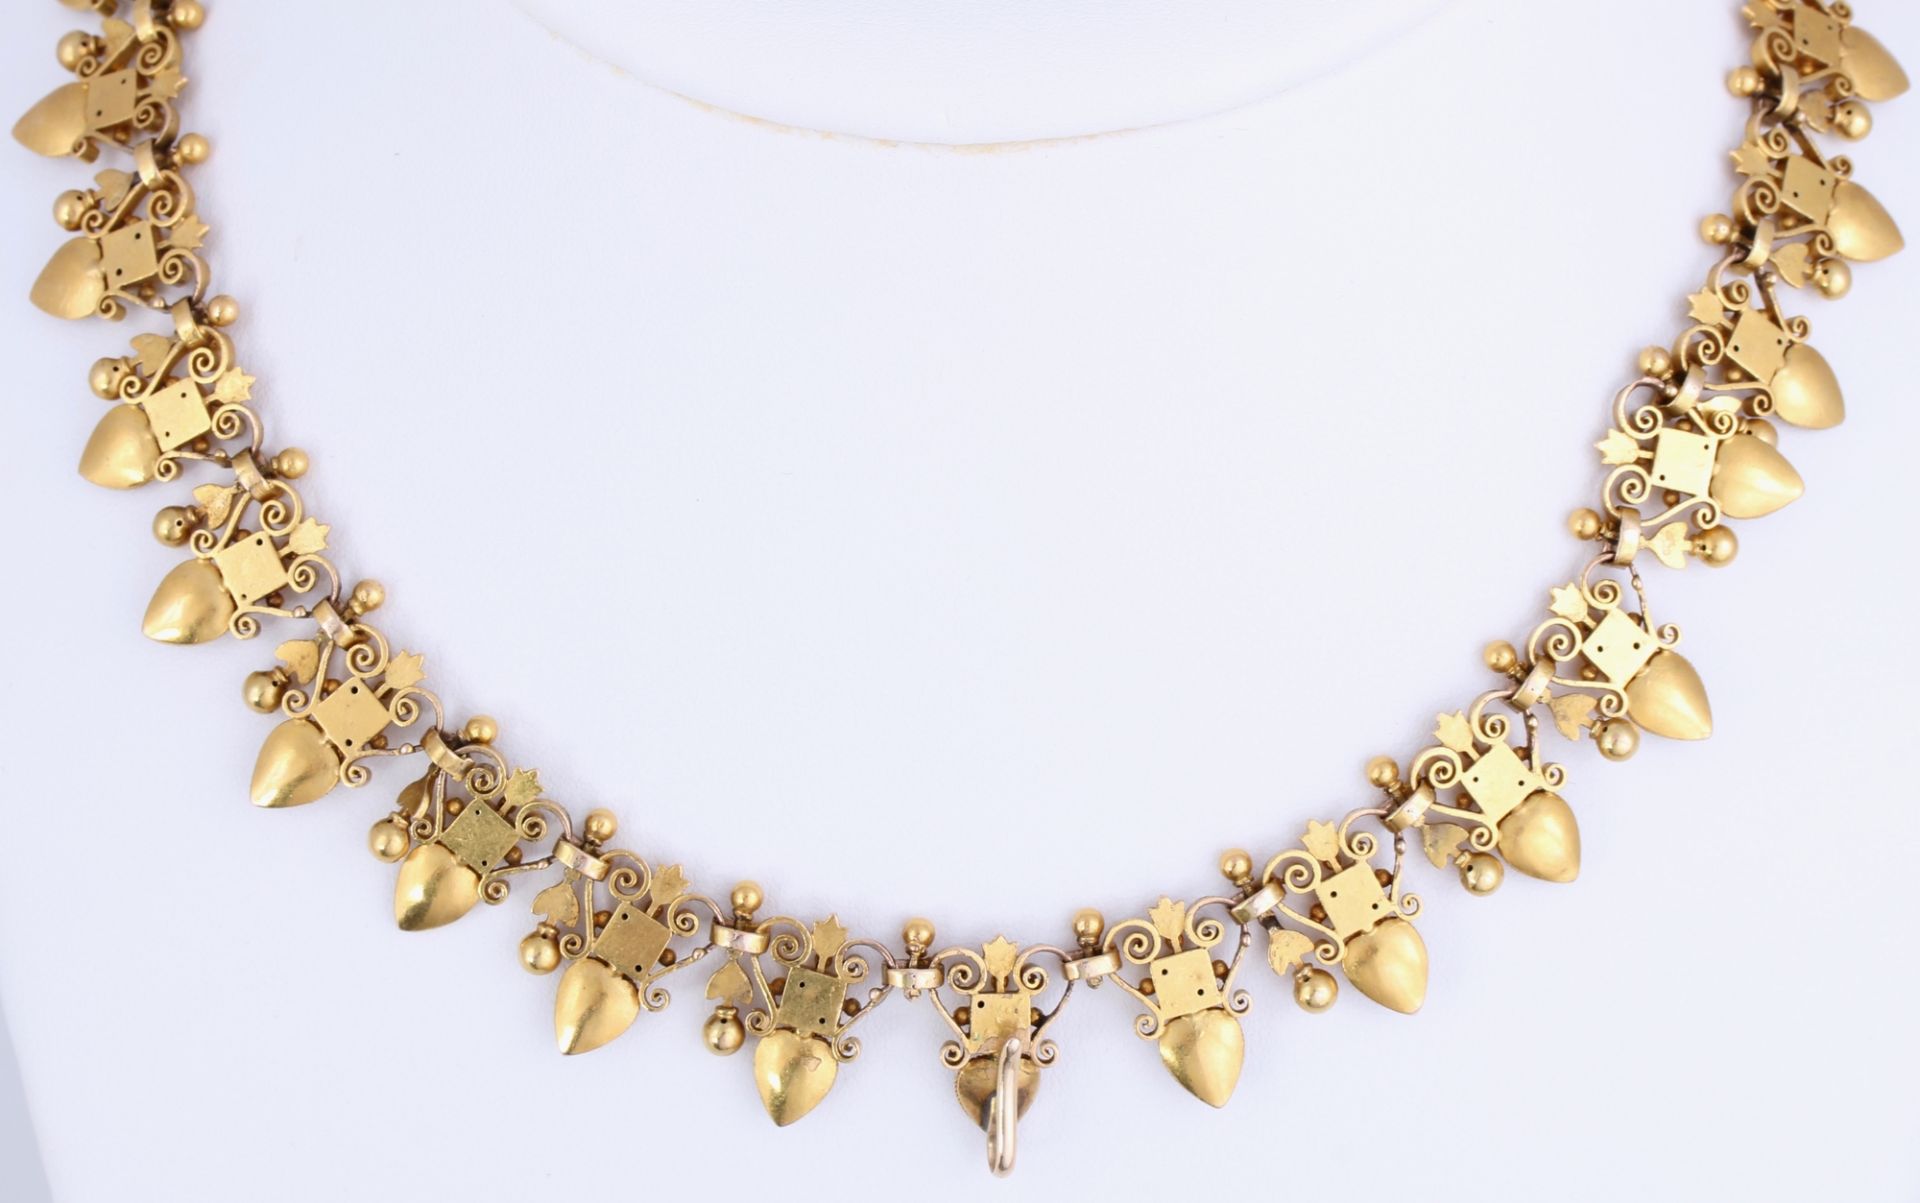 750 Gold Collier Antikschmuck 19. Jahrhundert, 18K gold necklace 19th century,